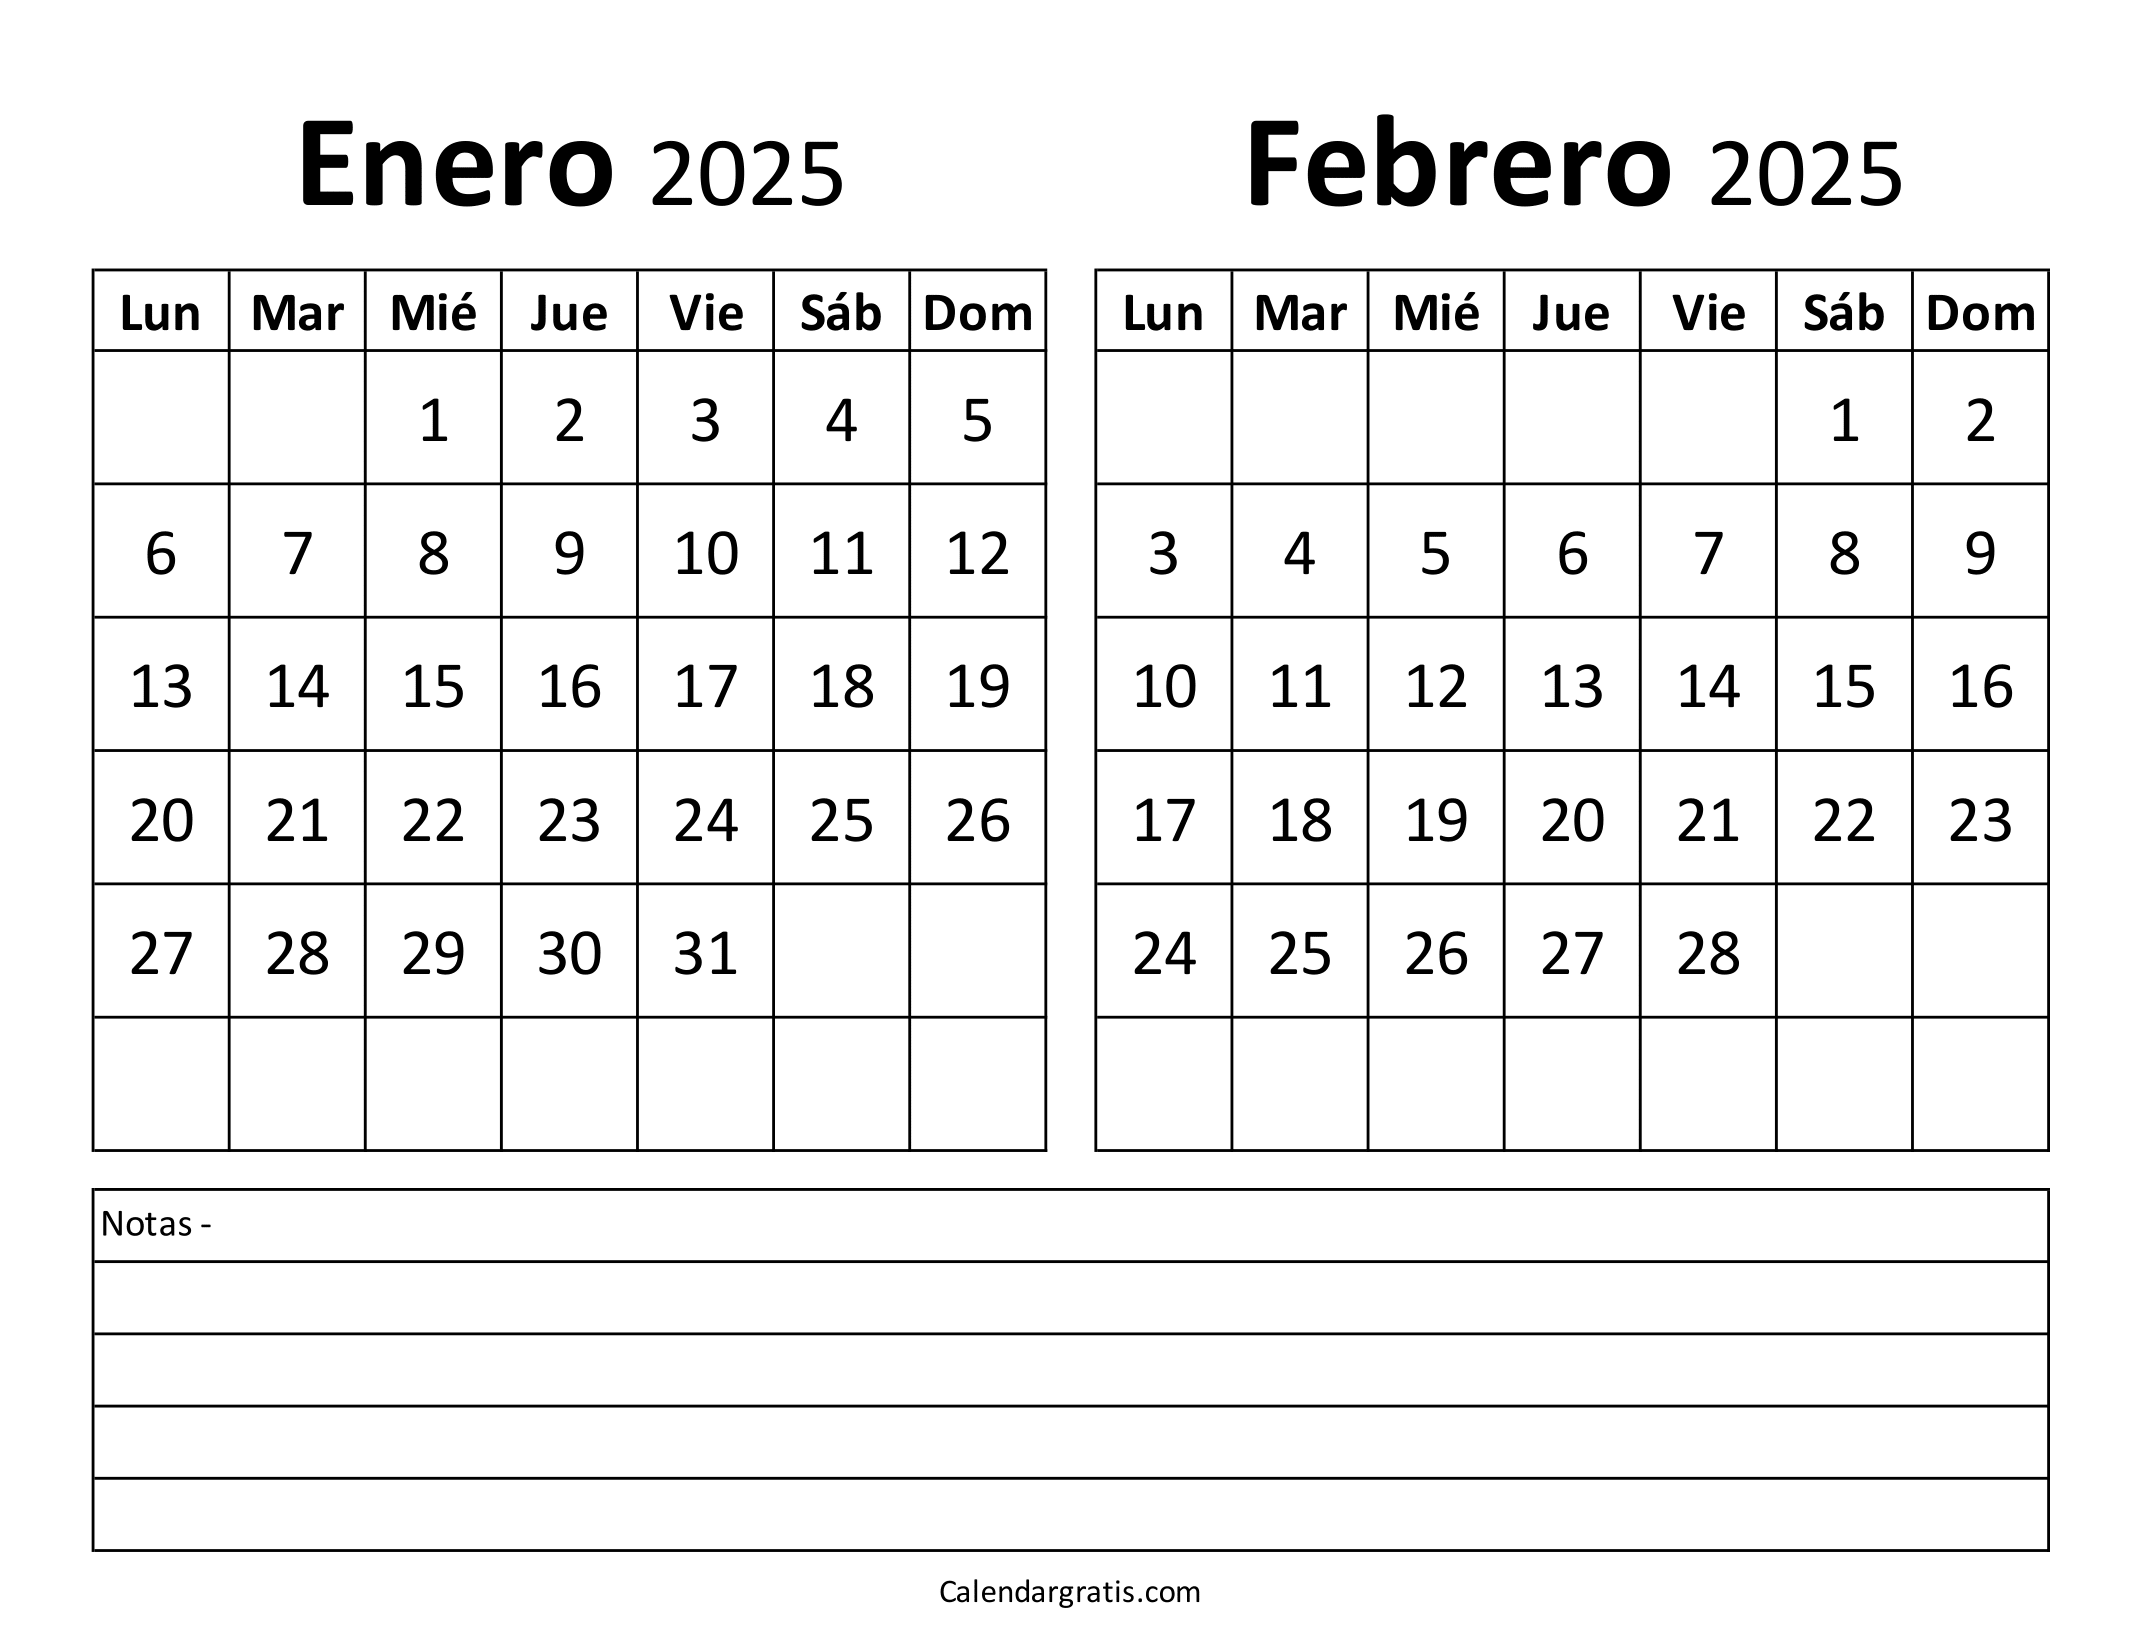 Calendario de enero y febrero 2025